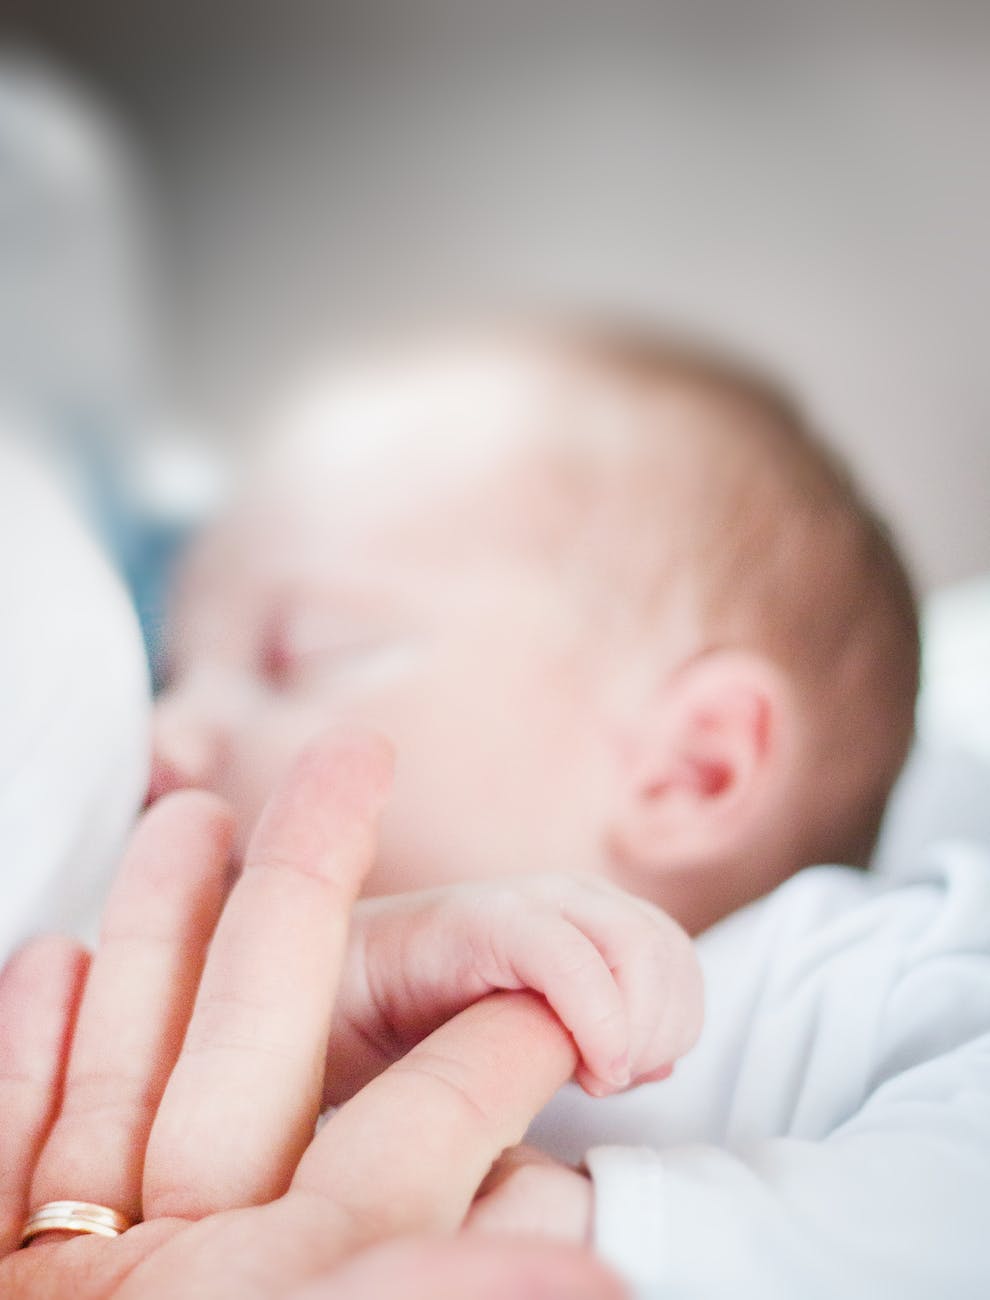 tilt shift lens photo of infant s hand holding index finger of adult